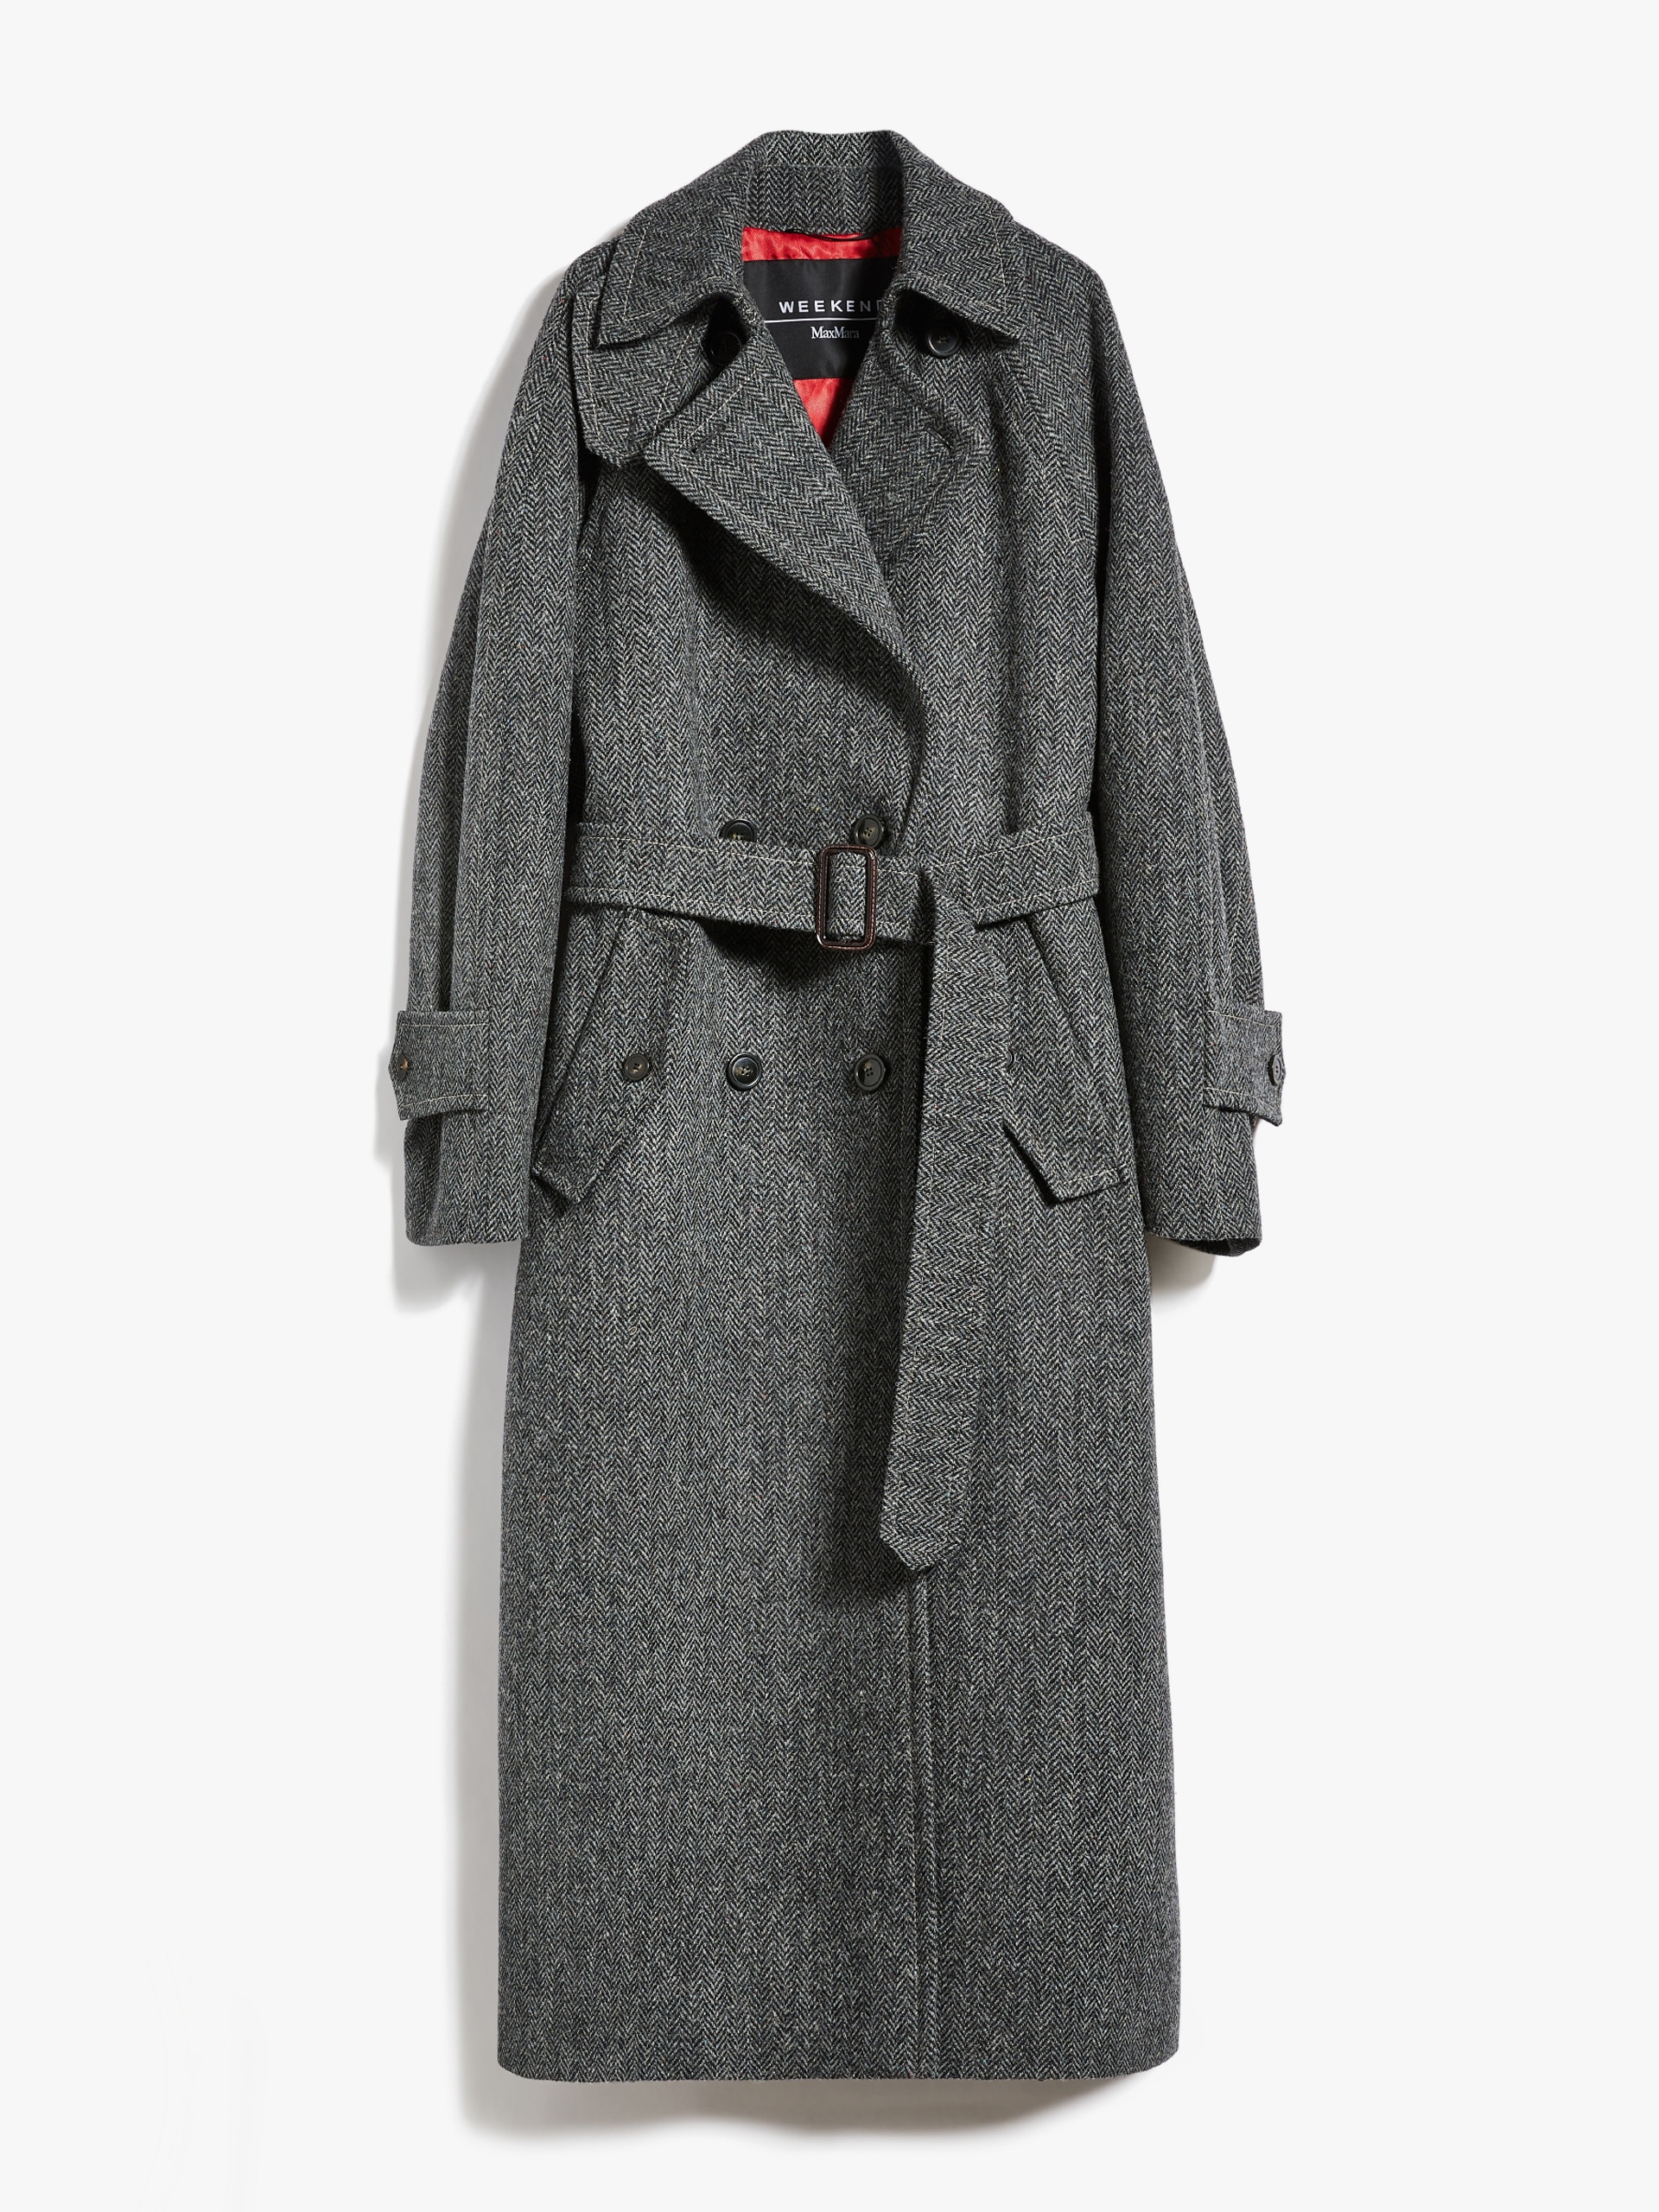 Max Mara Harris Tweed coat | REVERSIBLE